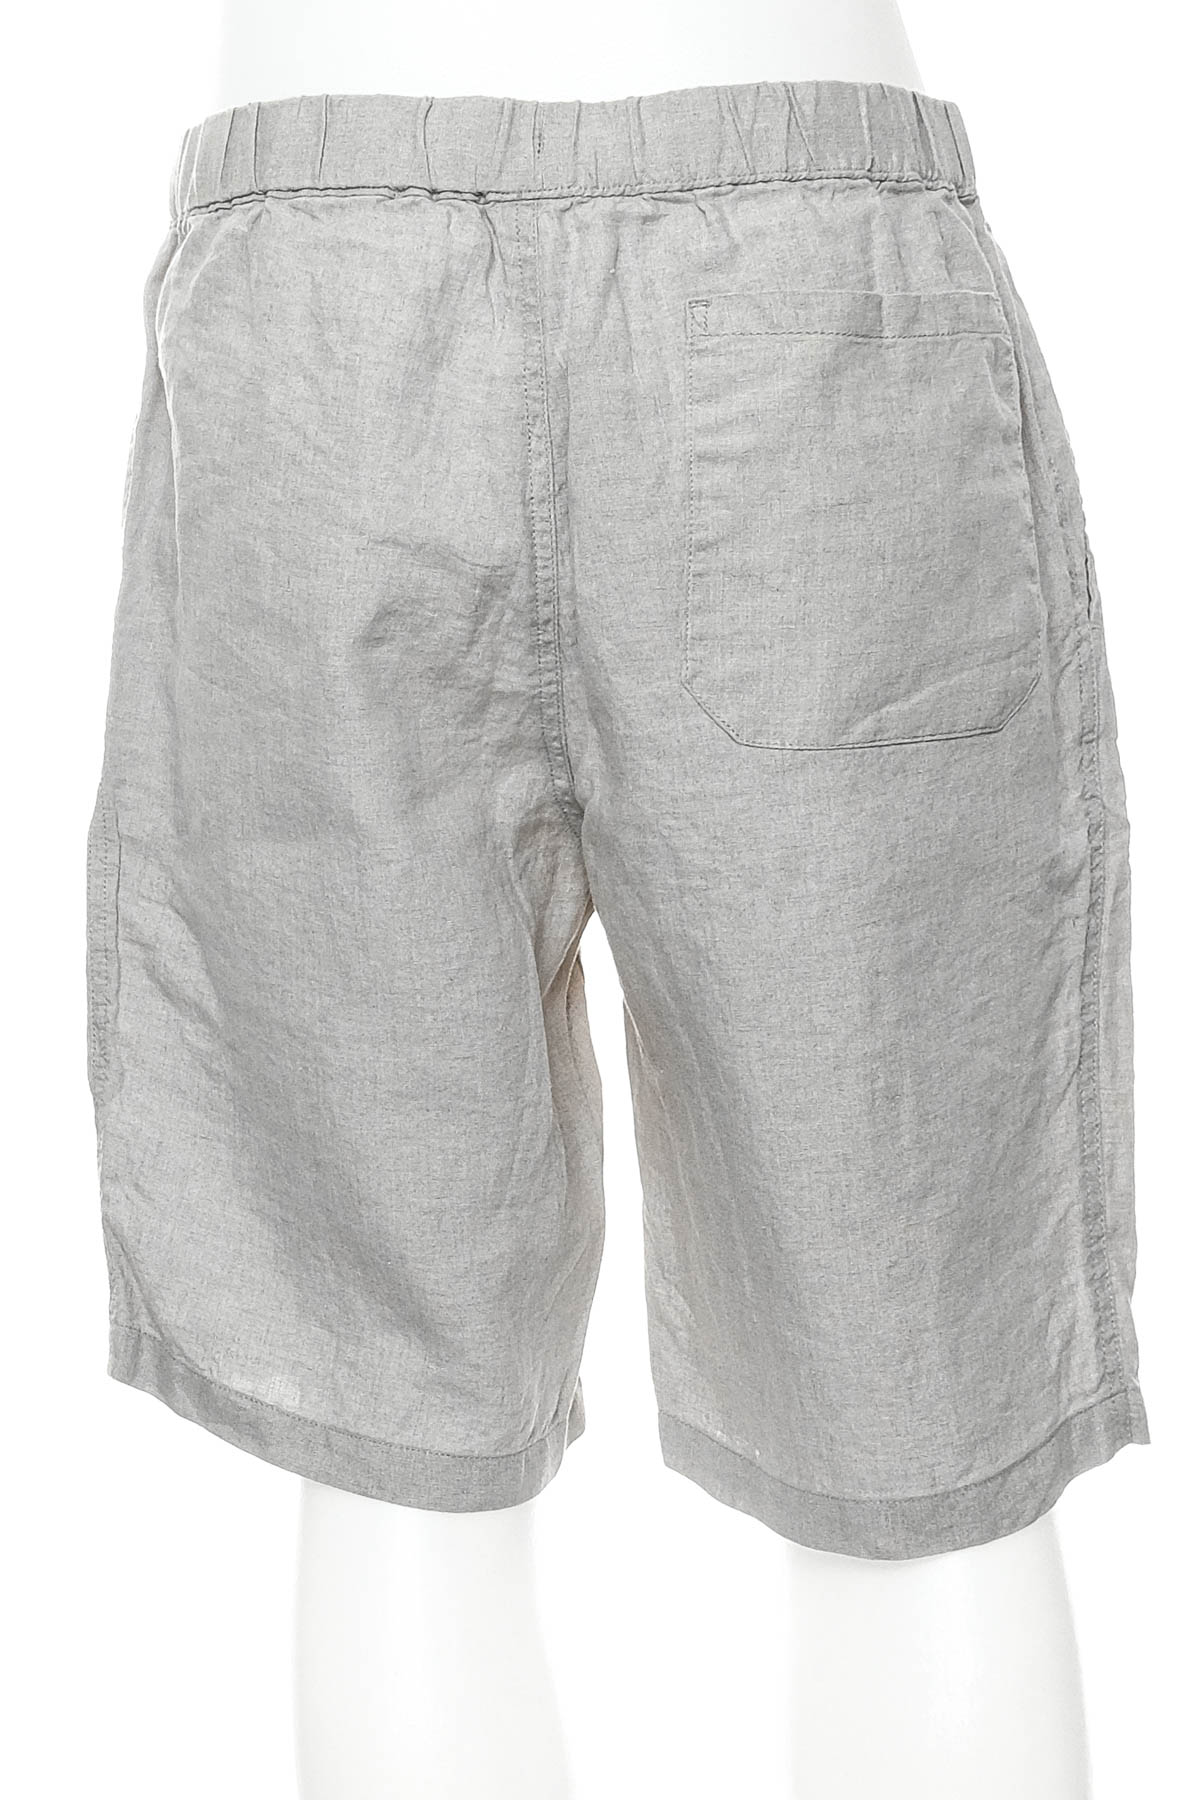 Men's shorts - MUJI - 1